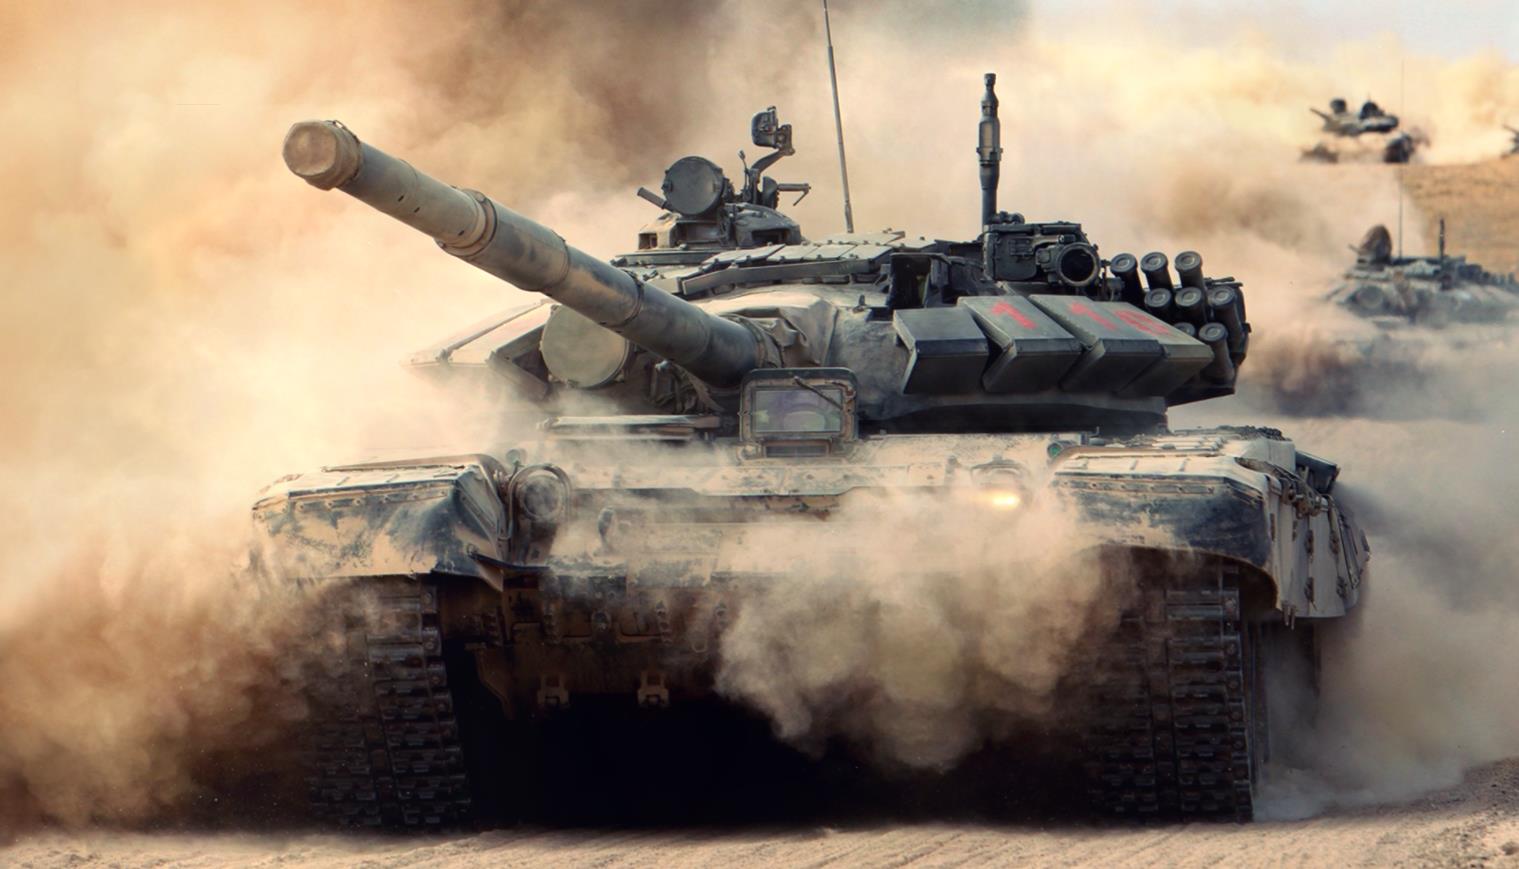 《Wallpaper Engine》T-72坦克沙漠疾行动态壁纸